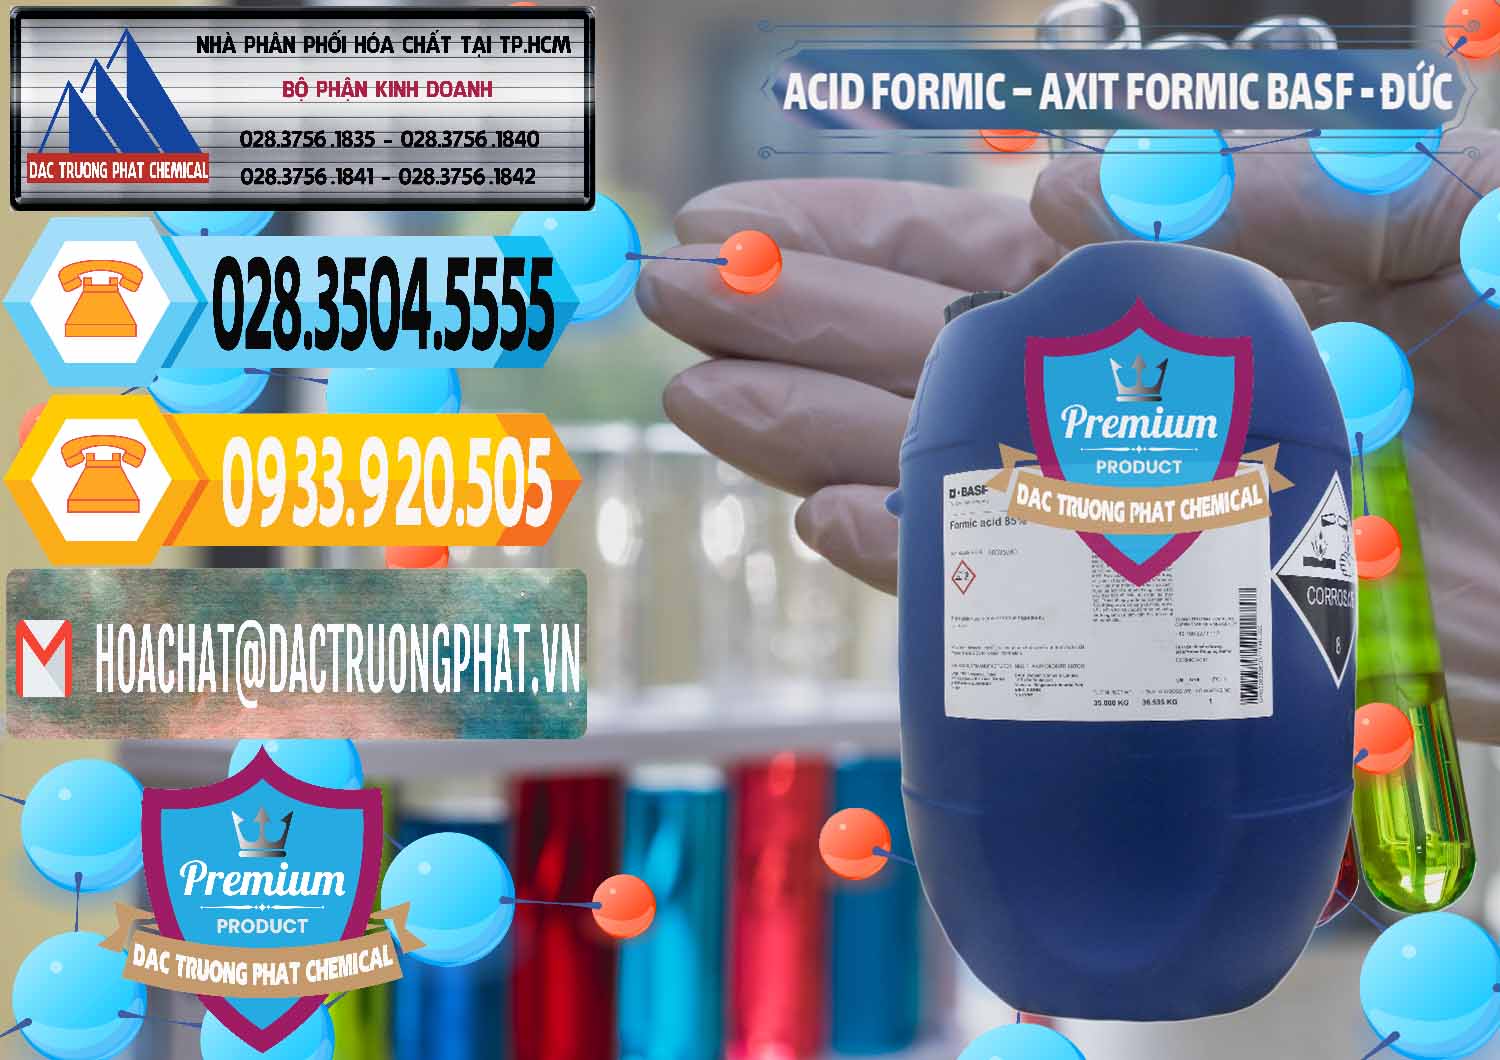 Công ty bán - phân phối Acid Formic - Axit Formic BASF Đức Germany - 0028 - Đơn vị chuyên nhập khẩu ( cung cấp ) hóa chất tại TP.HCM - hoachattayrua.net